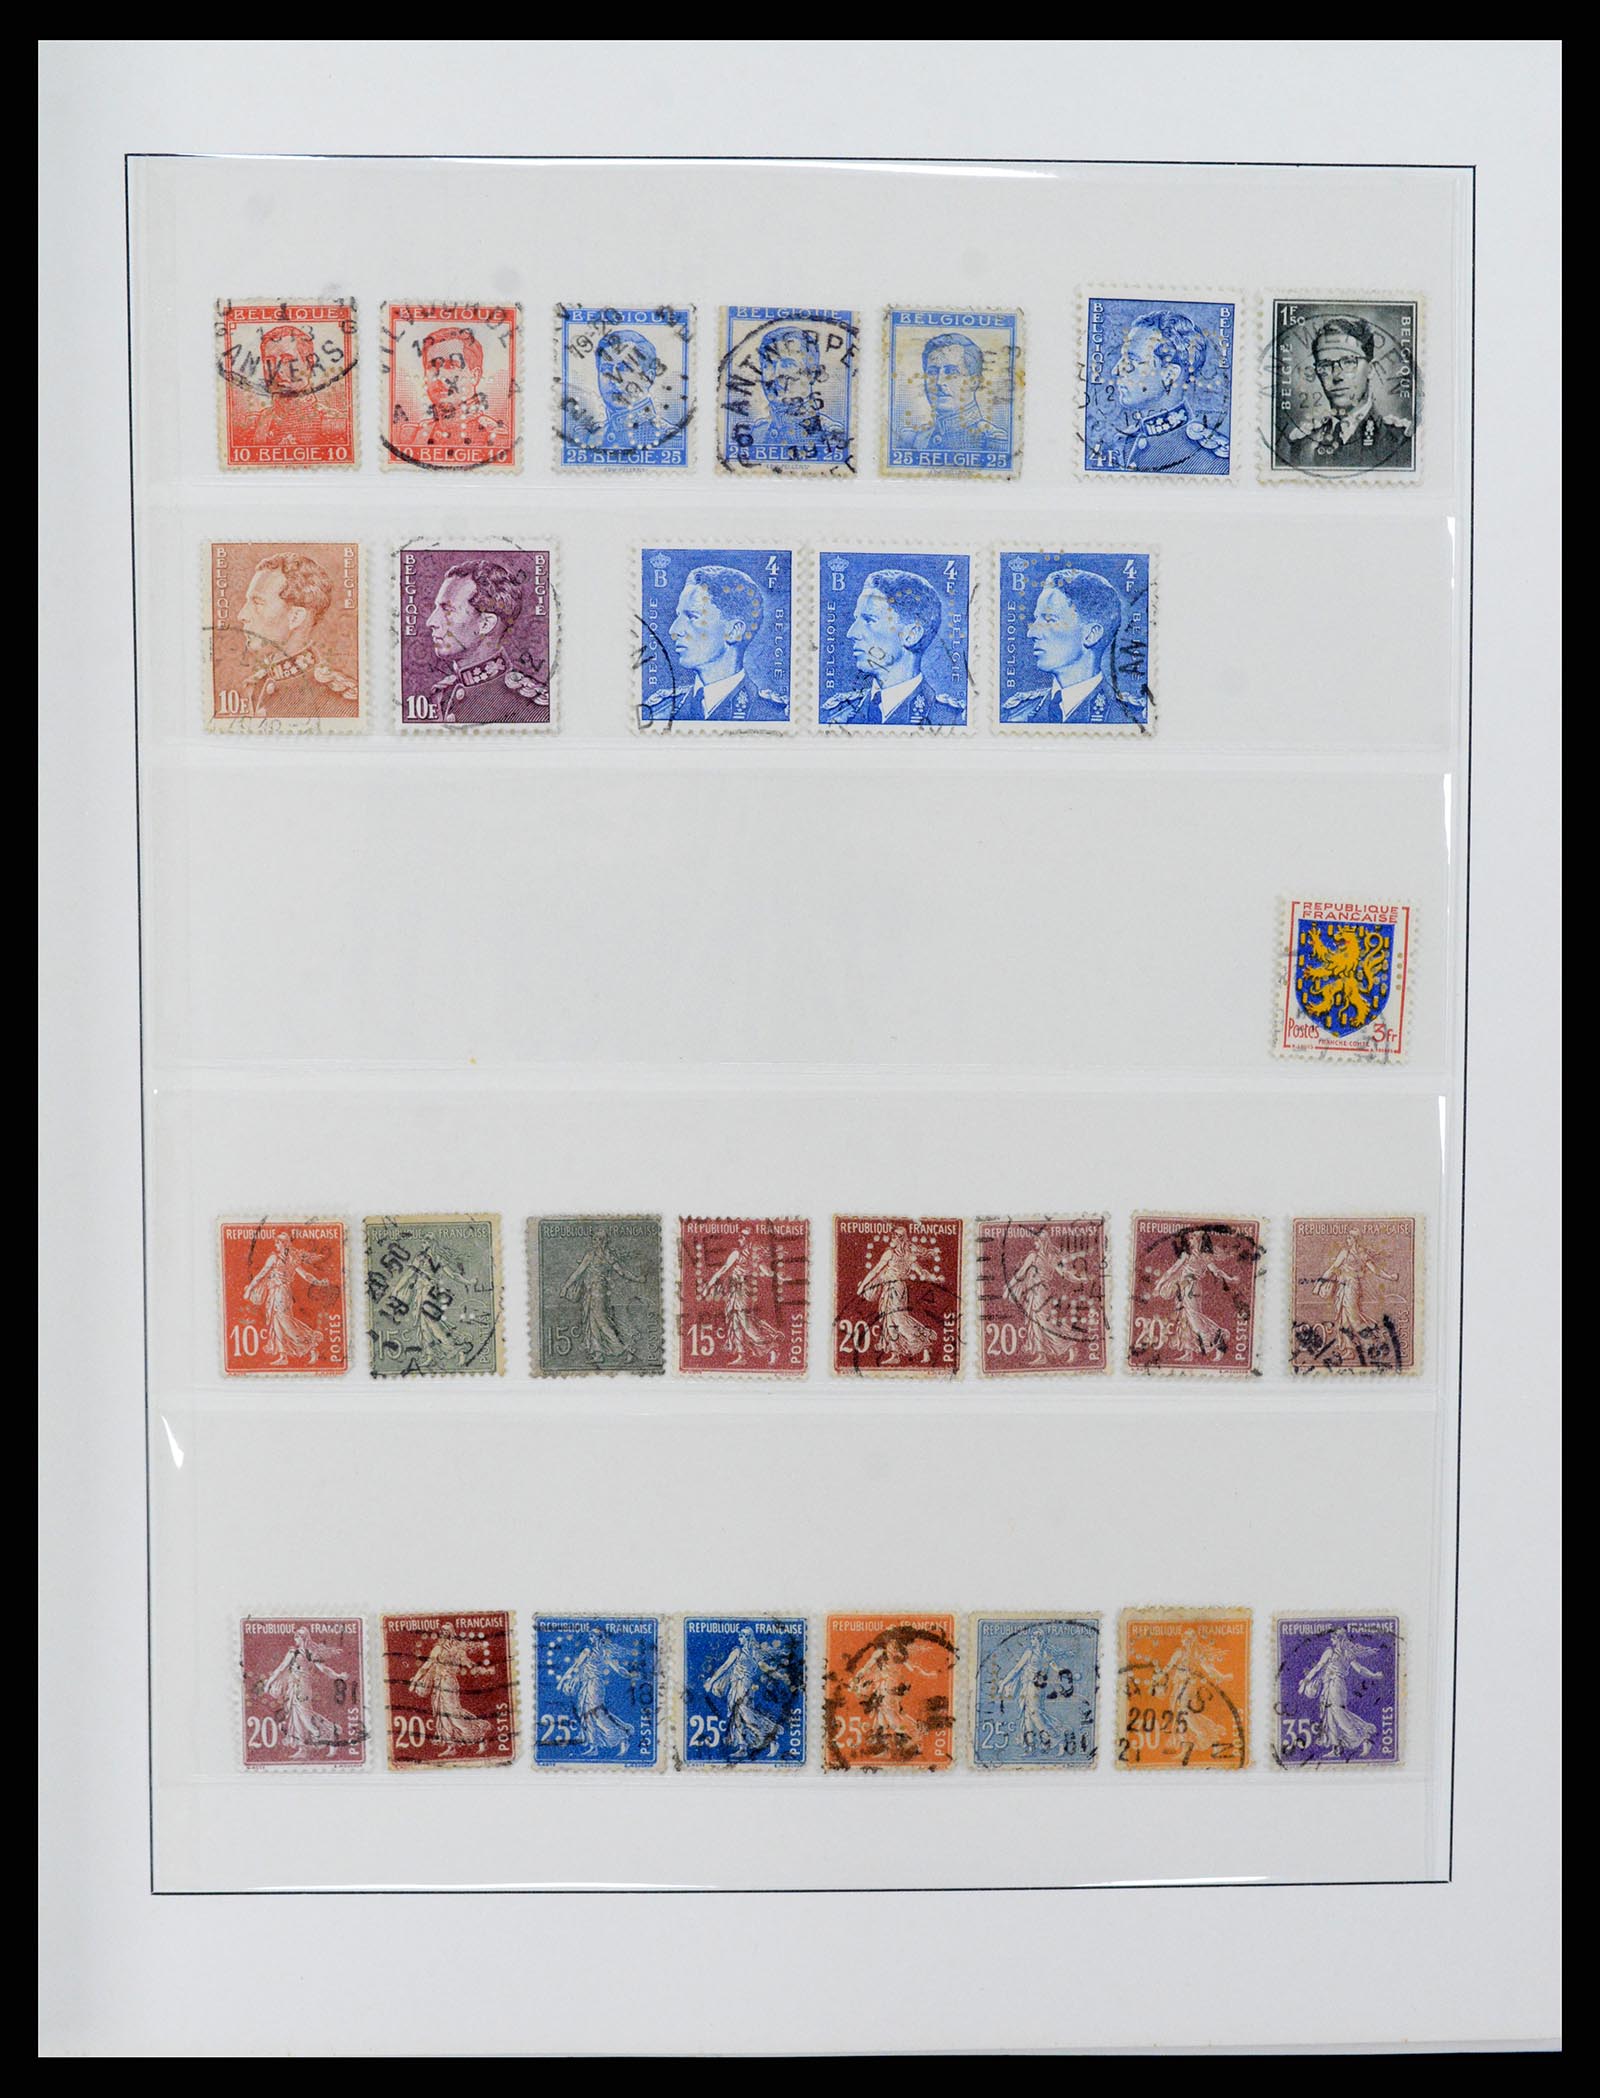 37317 029 - Postzegelverzameling 37317 Wereld perfins 1880-1960.